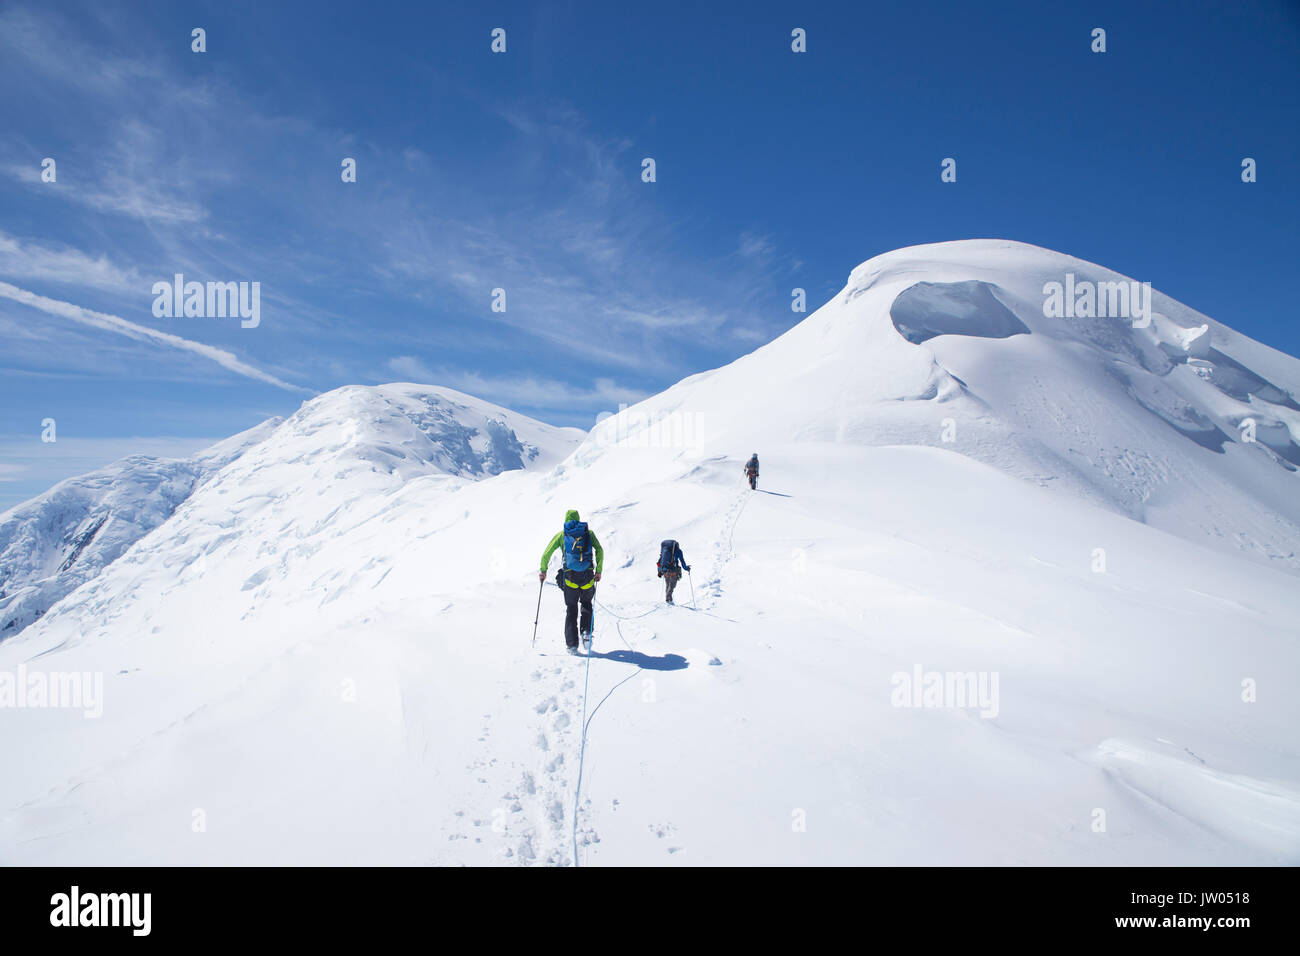 Les alpinistes en route pour le sommet du dôme Kahiltna, une montagne près de Denali en Alaska. Les grimpeurs sont reliés par une corde, pour les protéger de tomber au fond d'une crevasse de glacier. Denali National Park est un endroit idéal pour le ski de randonnée et l'escalade tours. Banque D'Images